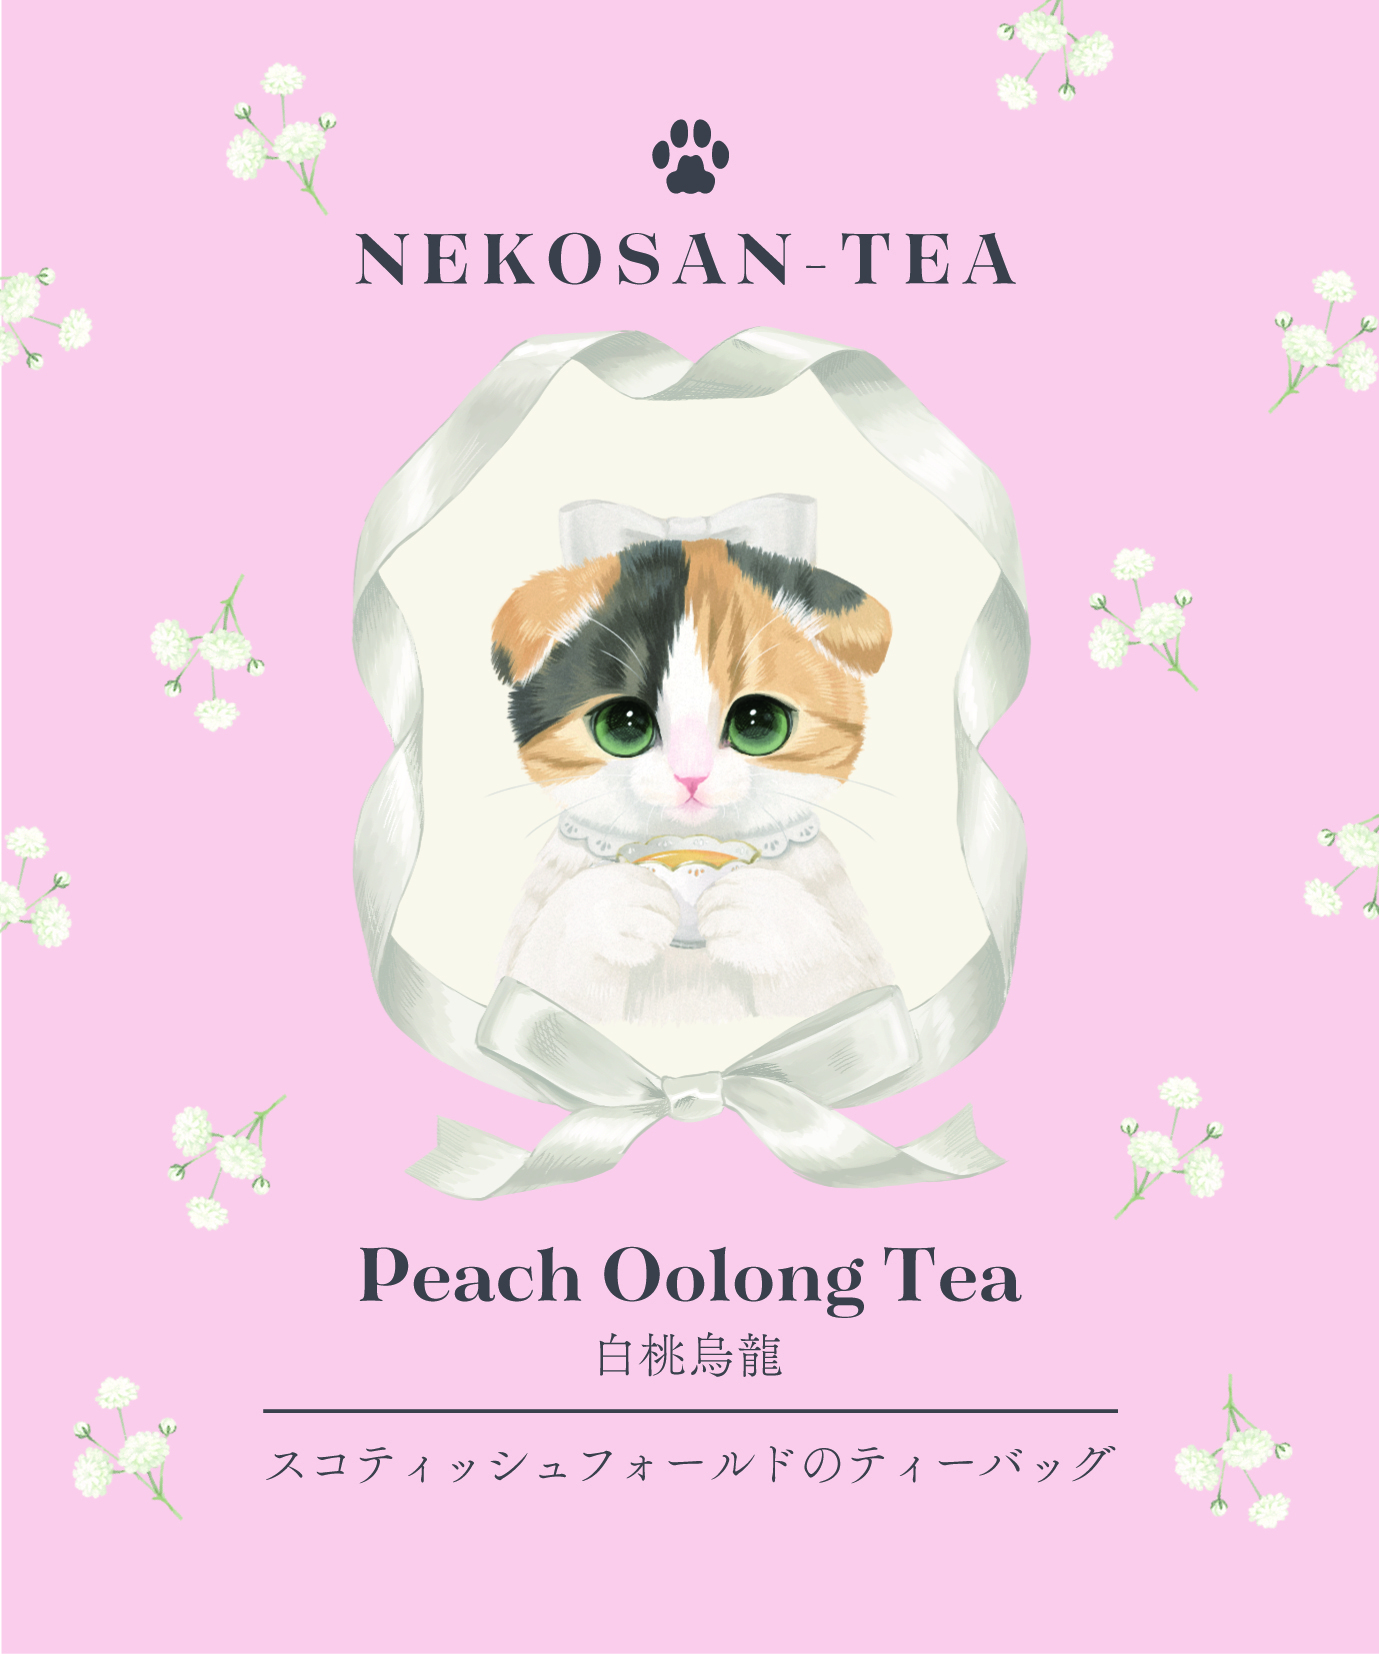 お洒落 日本緑茶センター キャットカフェ アールグレイ ティーバッグ 紅茶 3パック入り 台湾茶カフェ ネコ型 プレゼント ギフト 可愛い フック 